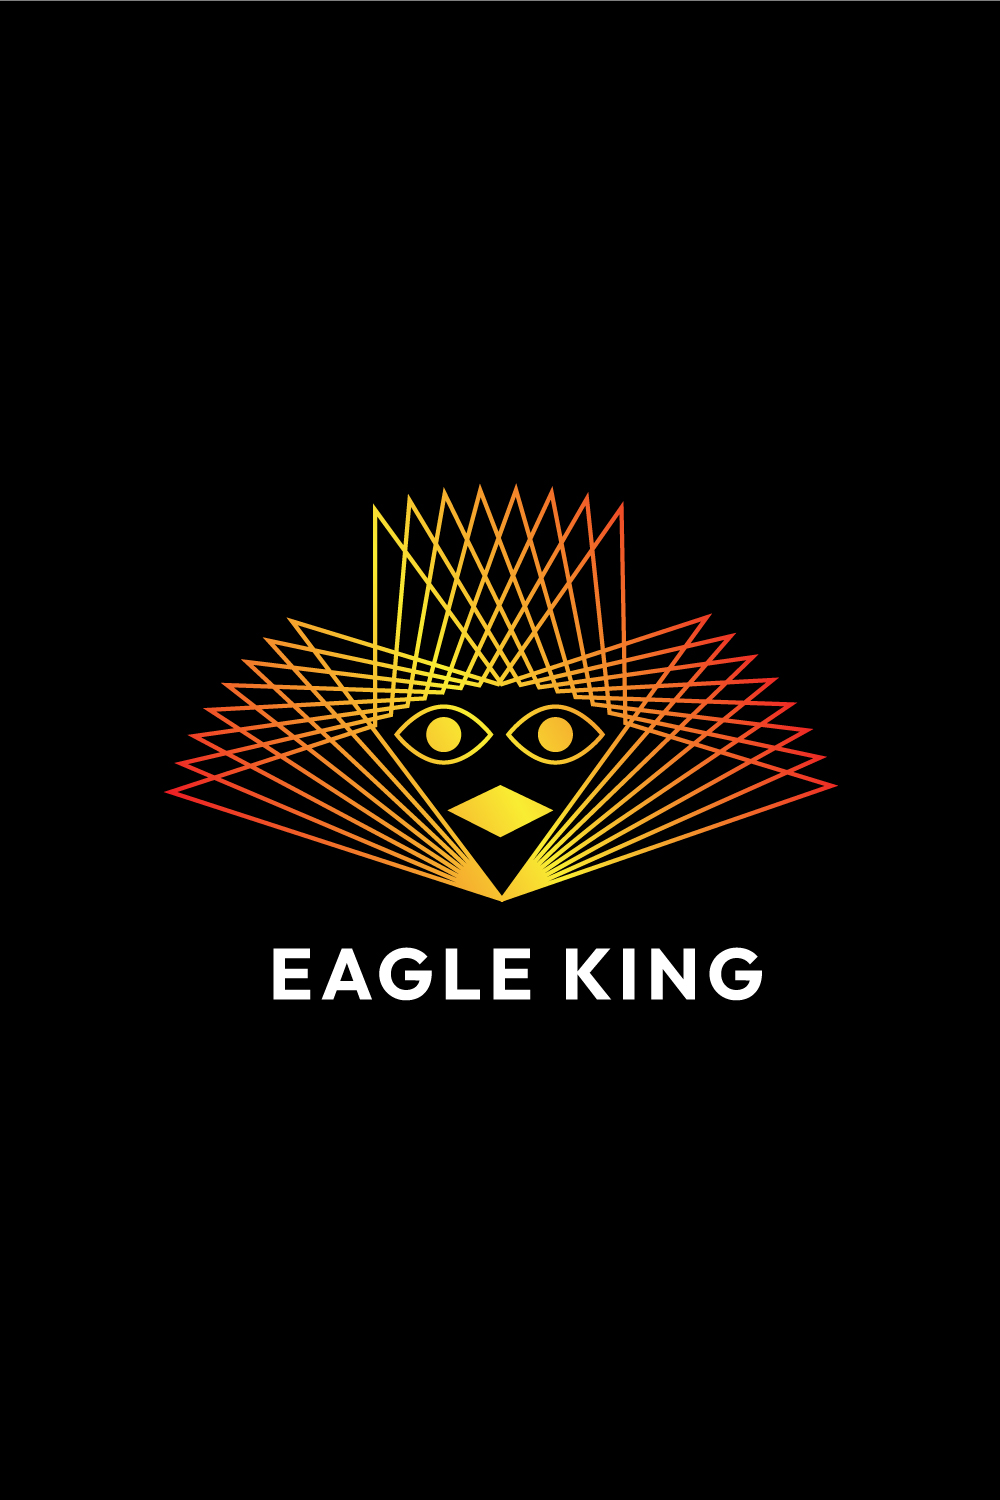 Regal Eagle King Line Art Logo Design - Majestic Emblem for Your Brand pinterest preview image.